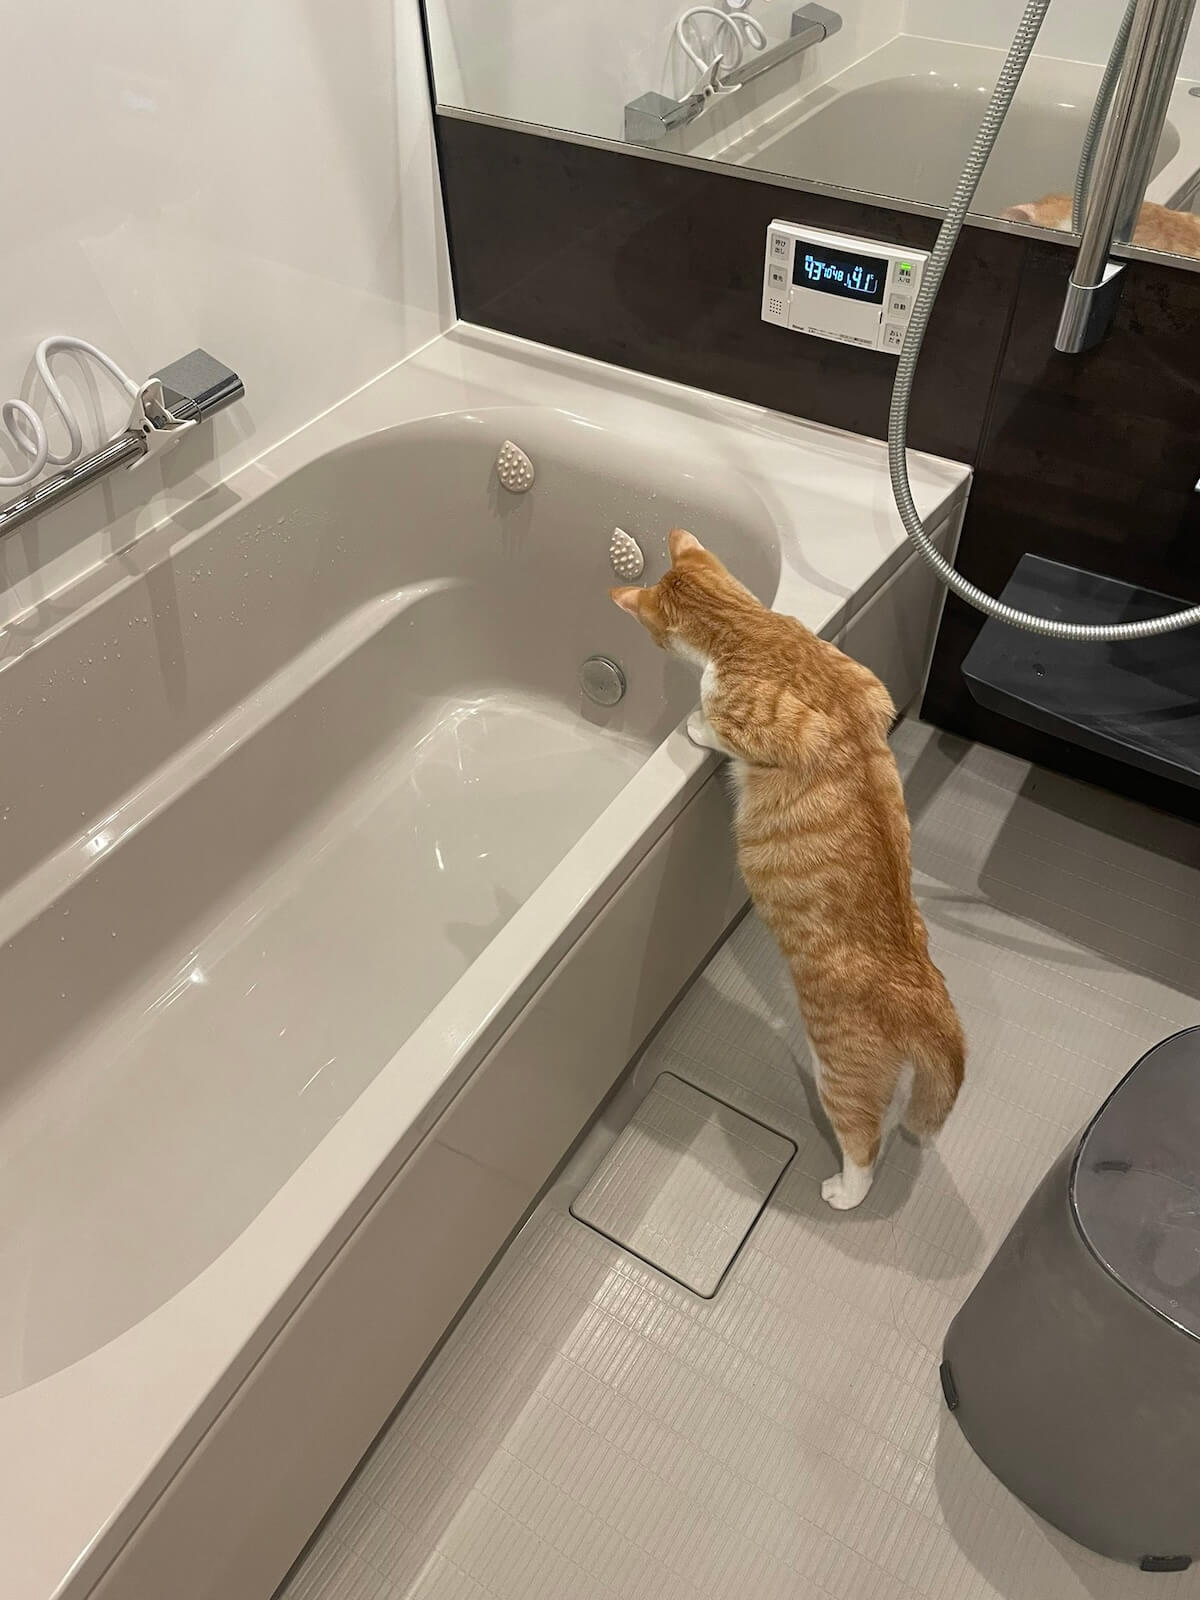 バスタブ（浴槽）にお湯が溜まるのを興味津々で見つめる猫